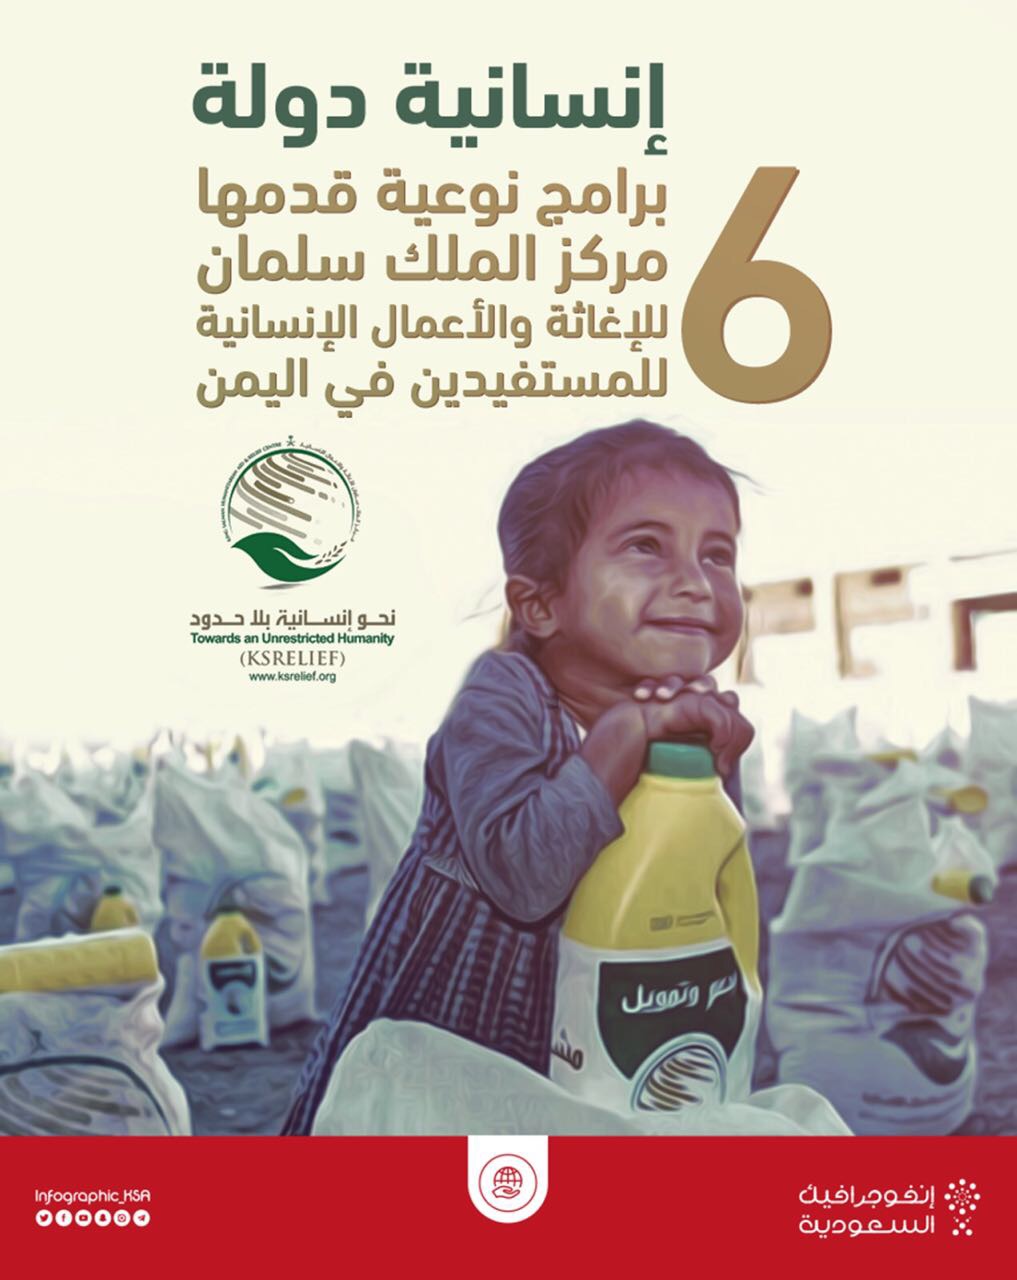 118 برنامجاً إنسانياً في اليمن قيمتها تجاوزت 576 مليون دولار